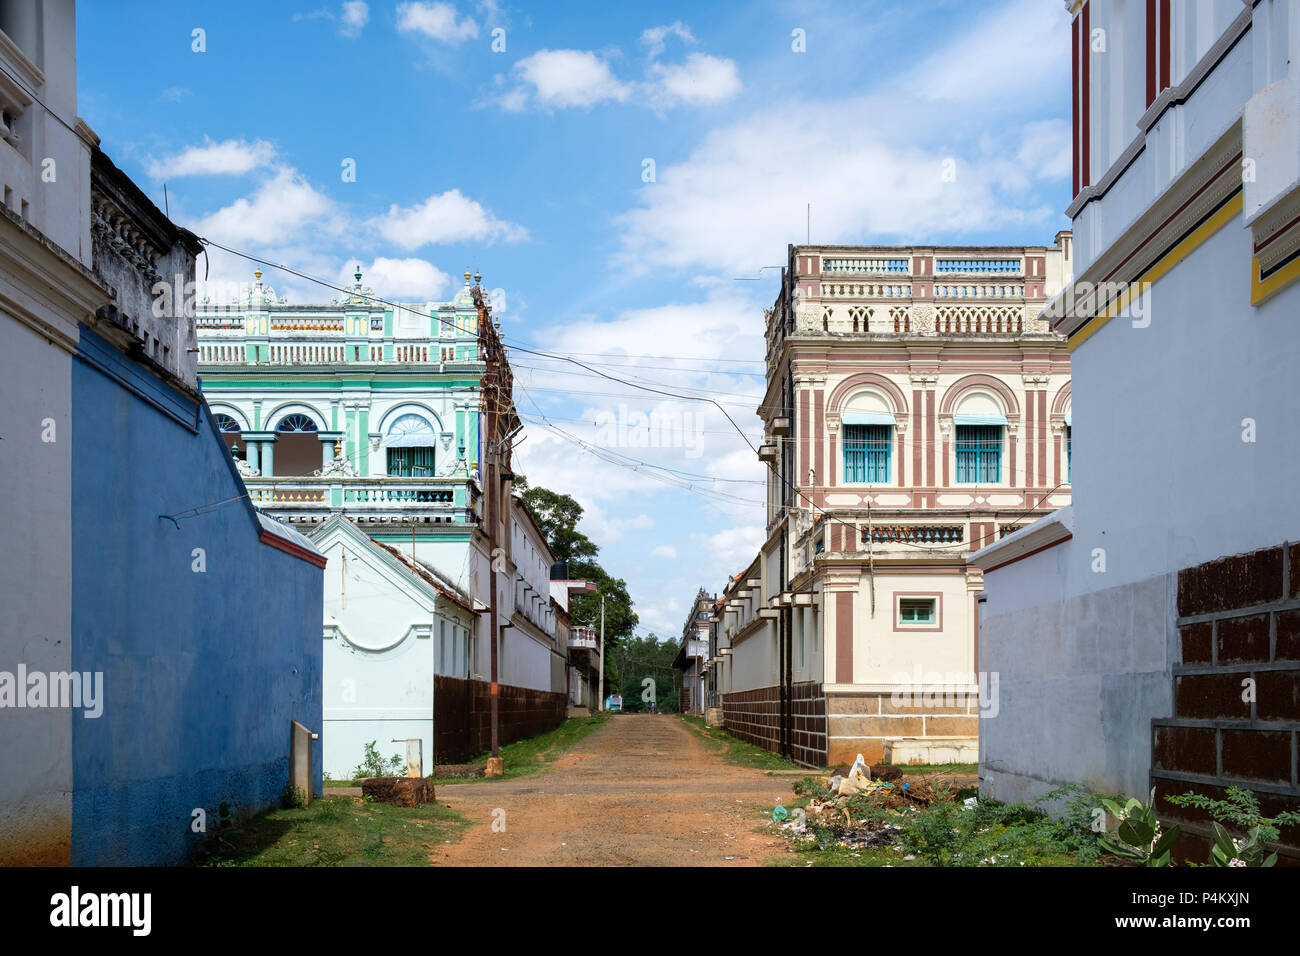 Chettinad Herrenhaus in Kanadukathan. Chettiars waren reich, aus dem 19. Jahrhundert Kaufleute und Bankiers aus der Region Chettinad, Tamil Nadu, Indien. Stockfoto